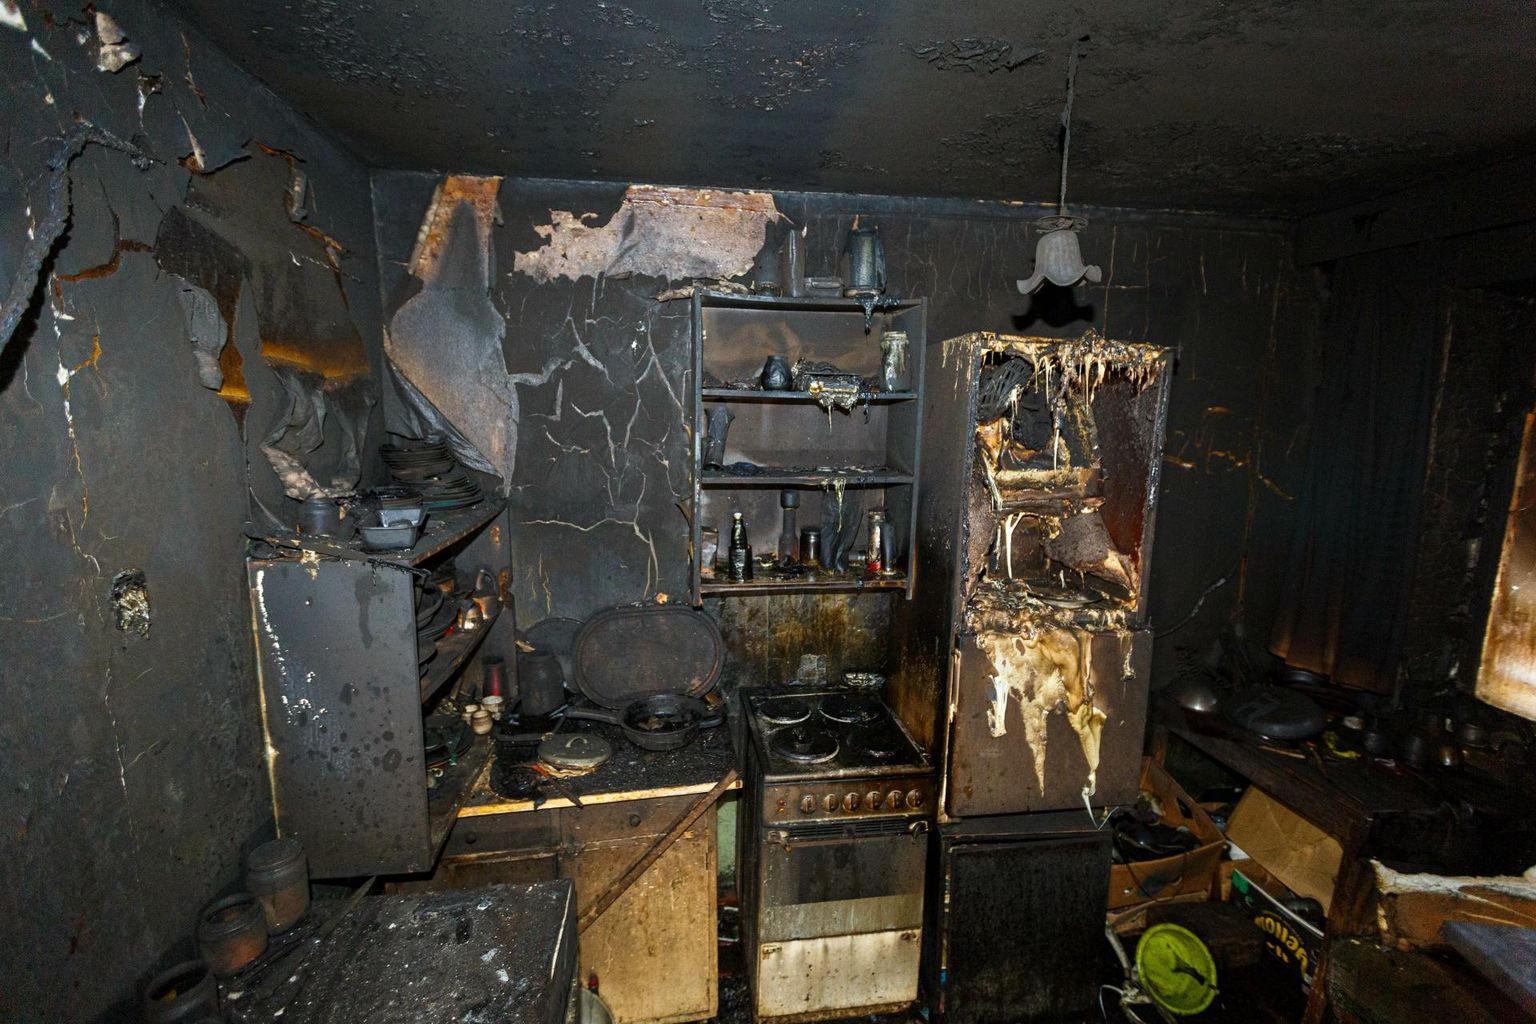 Setomaal Mikitamäe külas puhkes 7. detsembri öösel tulekahju, mille tagajärjel hukkus kolm majas elanud meest. Pildil on korter, kus tuli valla pääses. Siit leiti kahe mehe surnukehad.